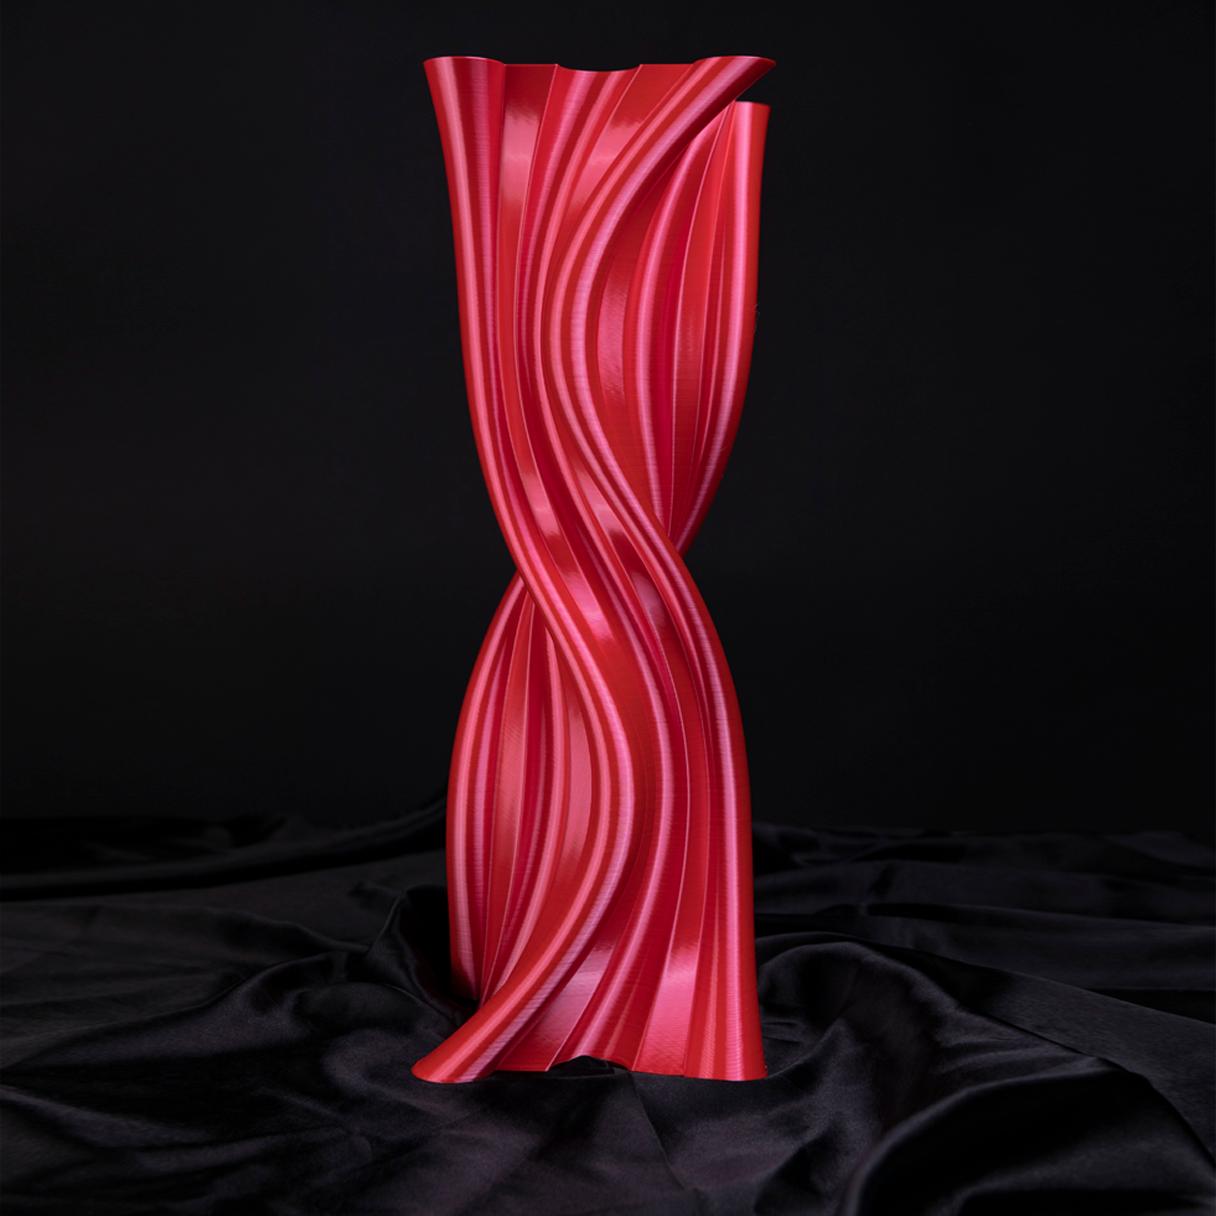 italien Tersicore, vase-sculpture rouge contemporain durable